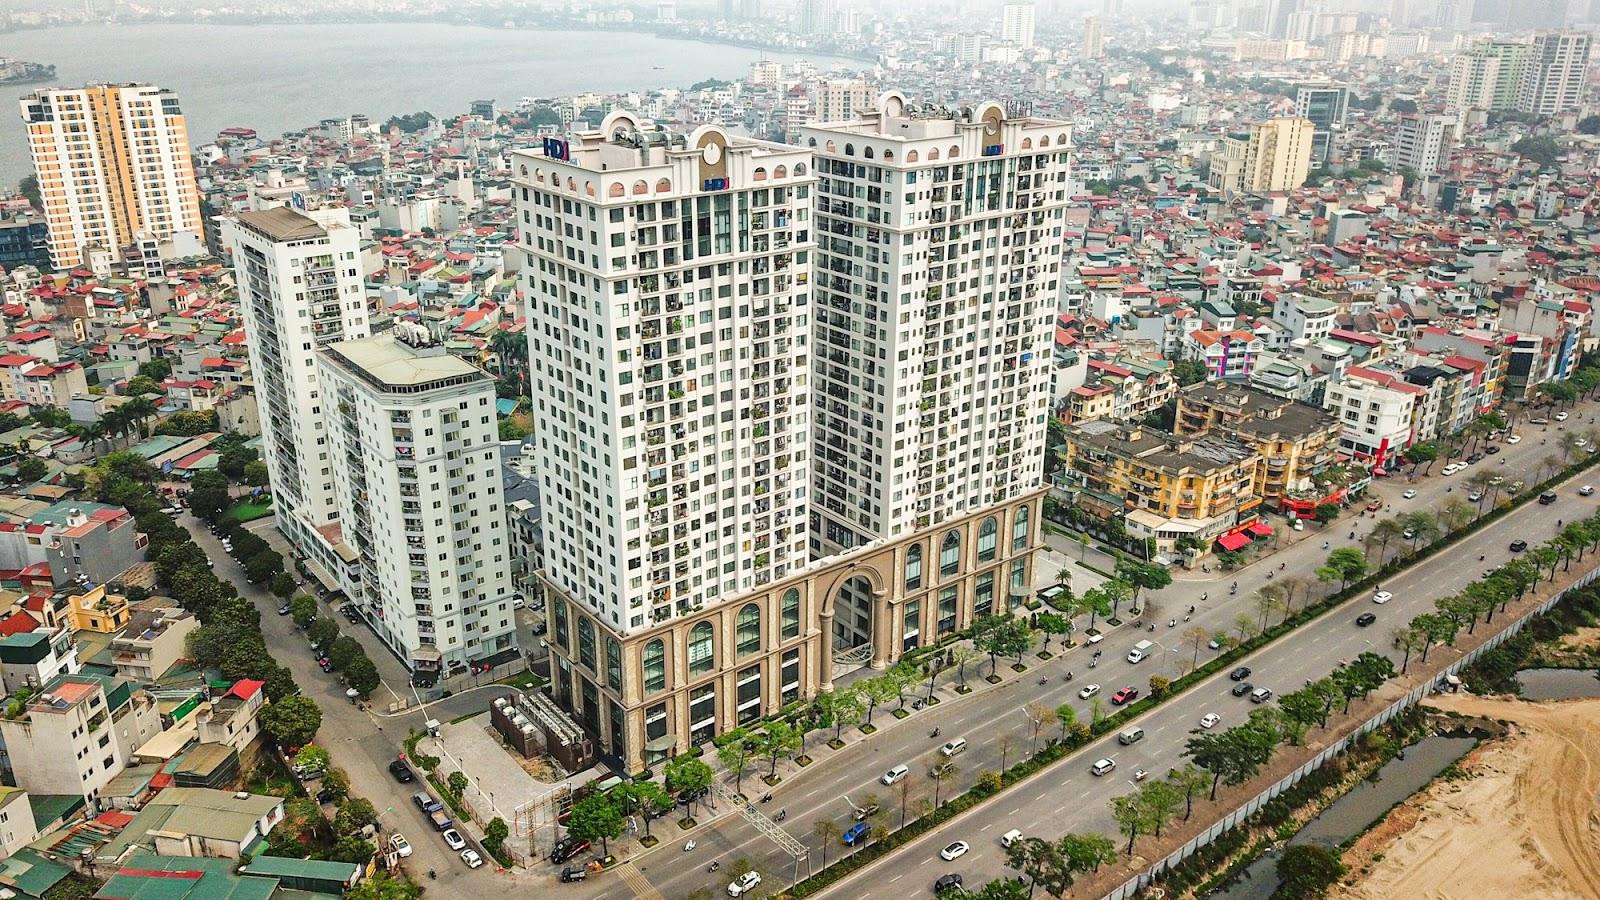 ‏[Photo Essay] Chung cư quanh TTTM đắt nhất thủ đô Lotte Mall Hanoi - Võ Chí Công đã hình thành mặt bằng giá mới lên đến 100 triệu đồng/m2 - Ảnh 4.